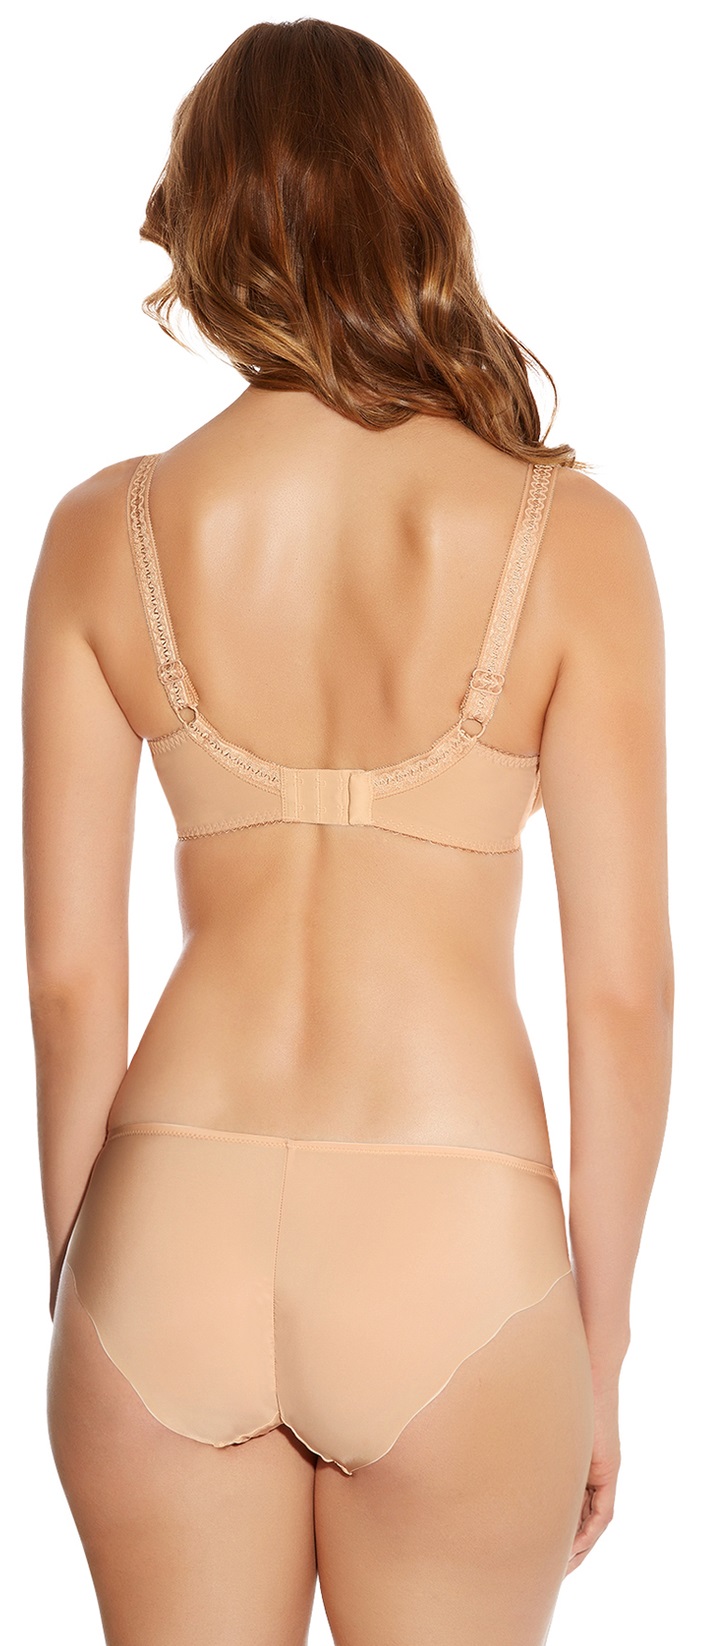 http://www.bodybeautifullingerie.co.uk/images/current-lingerie/fantasie-current-lingerie/Fantasie-Alex/Fantasie-Alex-underwired-side-support-bra-brief-sand-rear.jpg